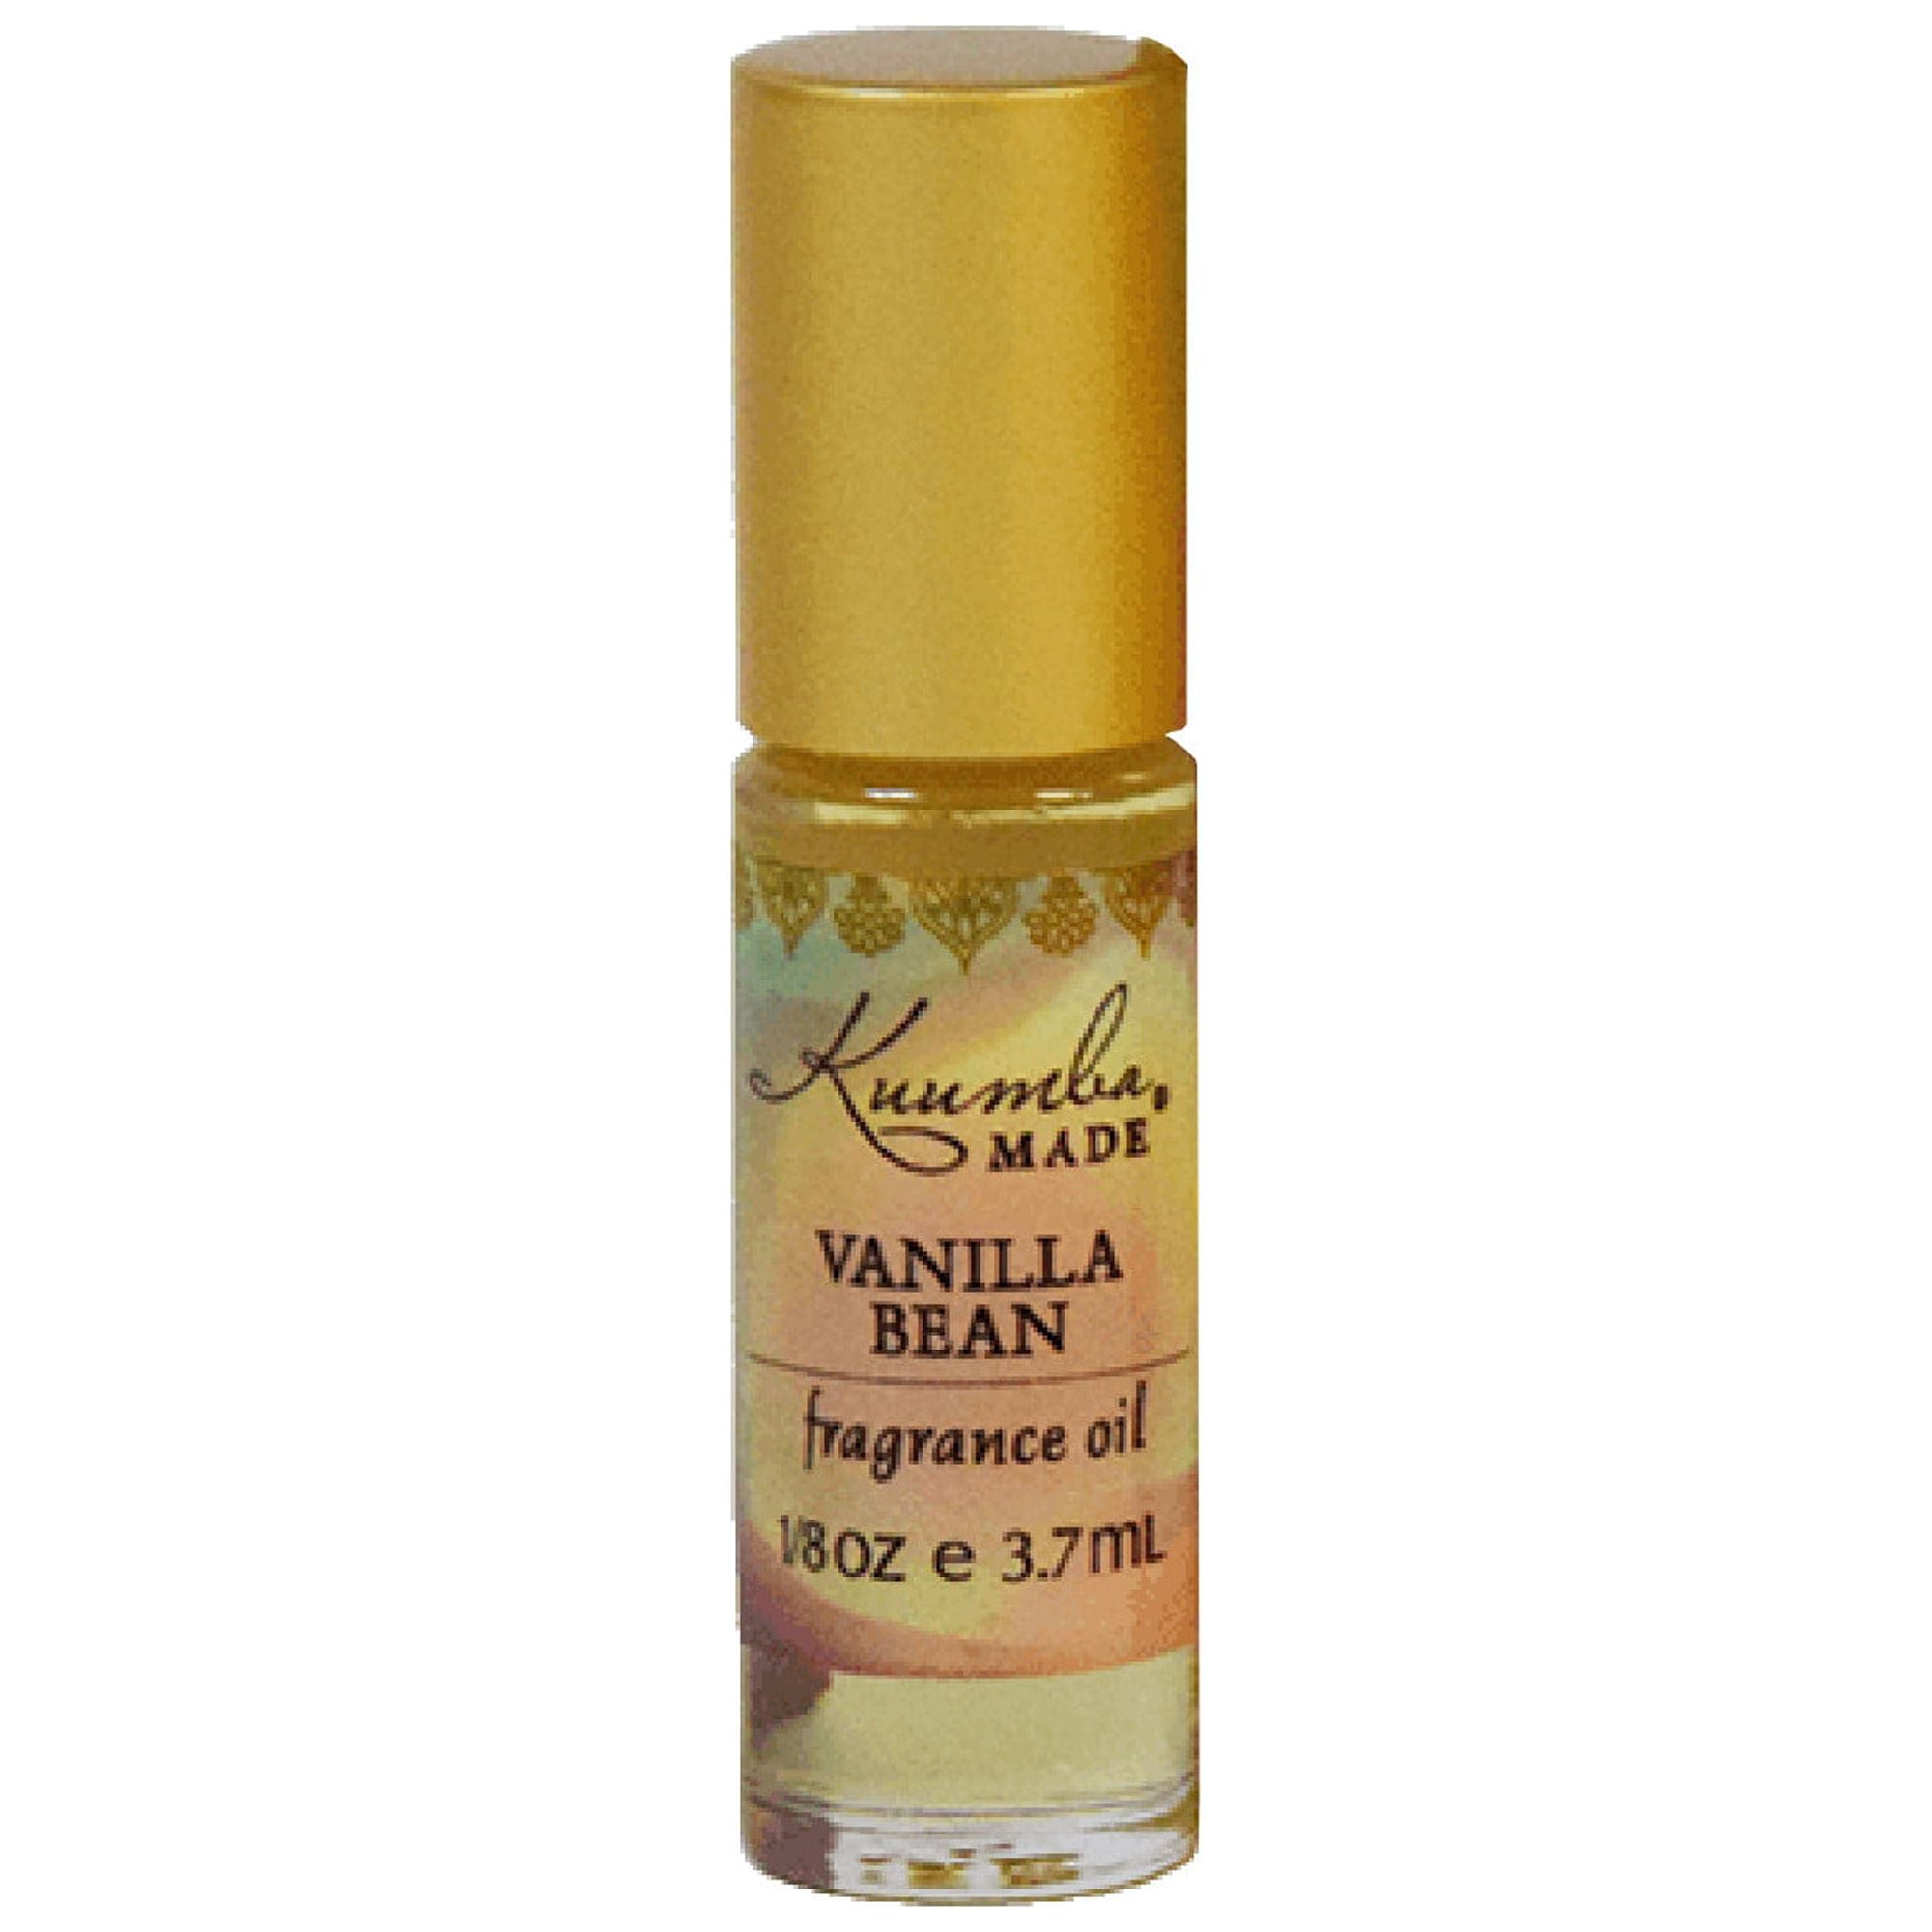 Vanilla Bean Fragrance Oil